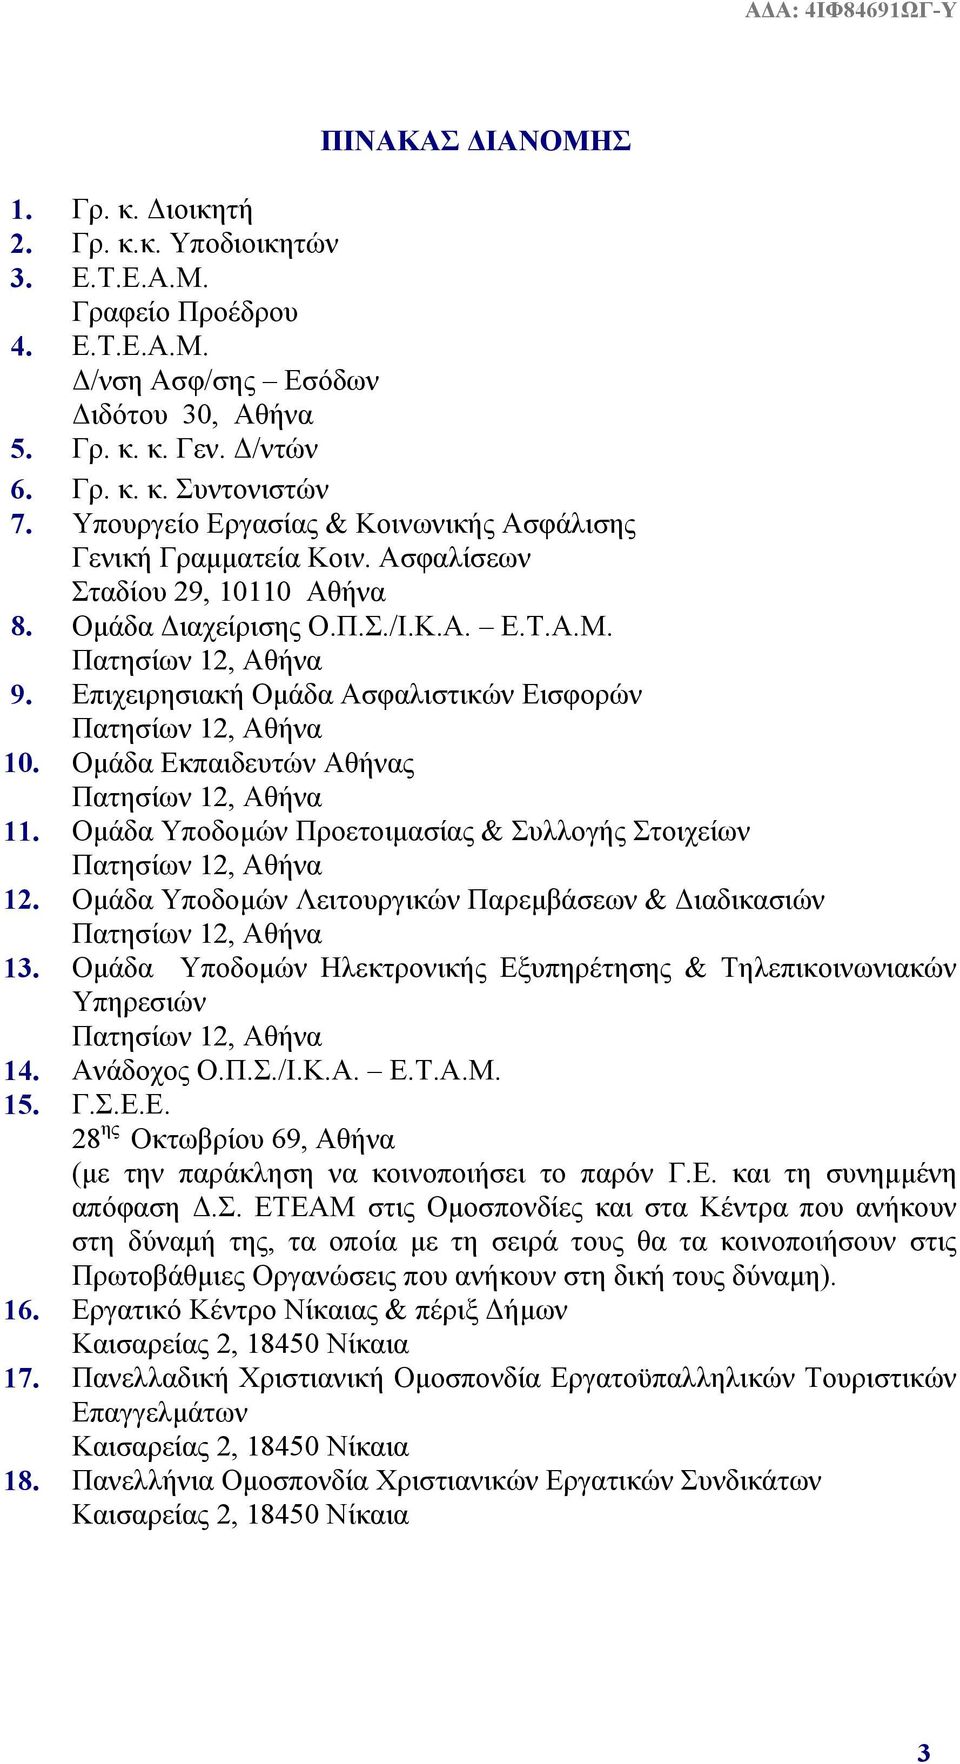 Ομάδα Εκπαιδευτών Αθήνας 11. Ομάδα Υποδομών Προετοιμασίας & Συλλογής Στοιχείων 12. Ομάδα Υποδομών Λειτουργικών Παρεμβάσεων & Διαδικασιών 13.